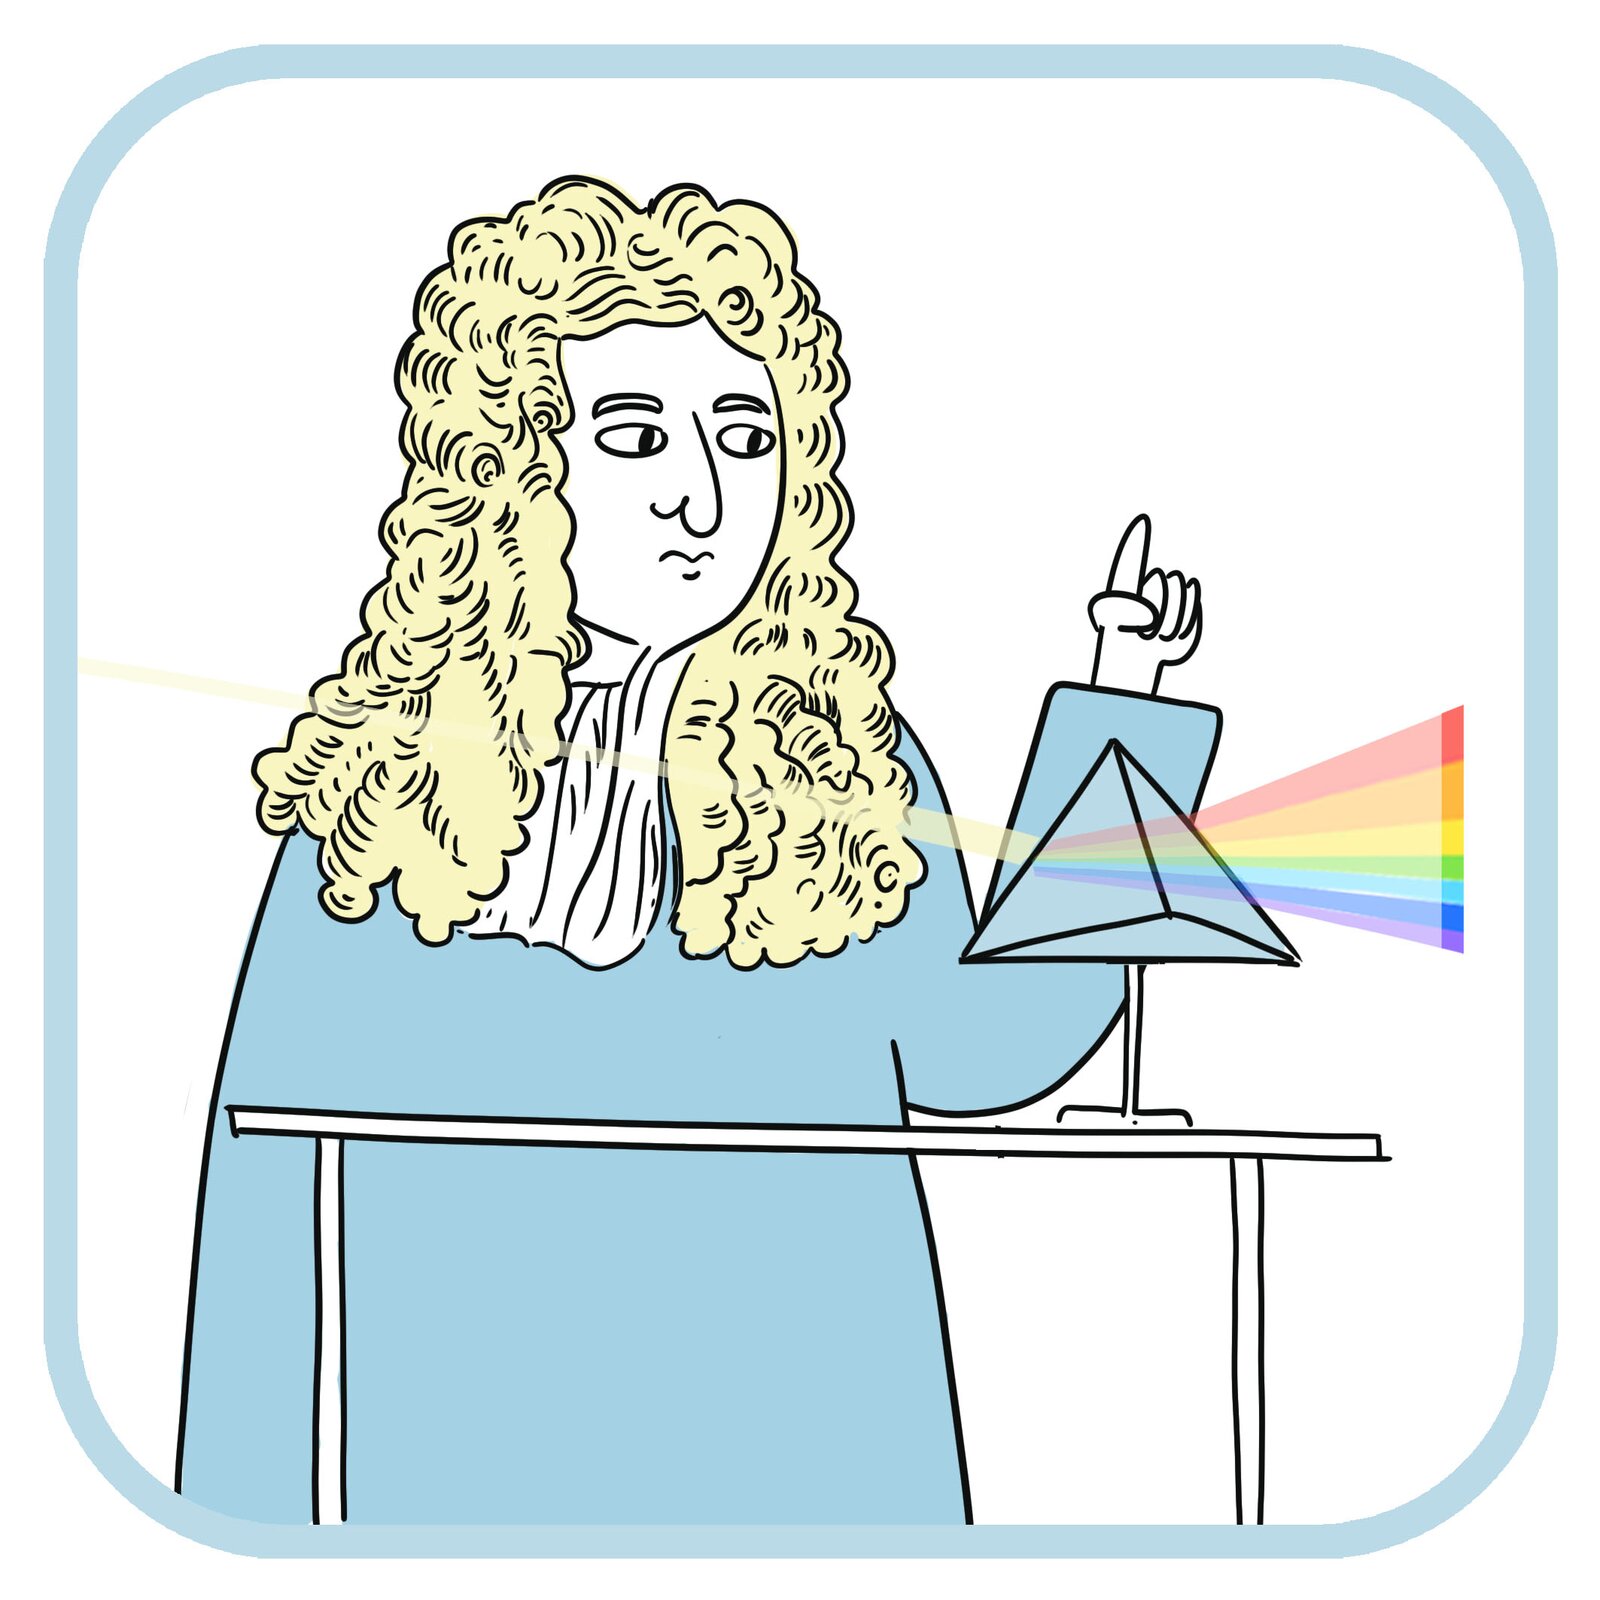 Isaac Newton (mężczyzna w jasnej peruce) wykonuje eksperyment z rozszczepieniem światła. Przed nim na stole stoi pryzmat. Z lewej strony pryzmatu widać wiązkę światła białego, które rozszczepia się w pryzmacie, zmienia kierunek i wychodzi z pryzmatu jako wielokolorowa, rozszerzająca się wiązka.